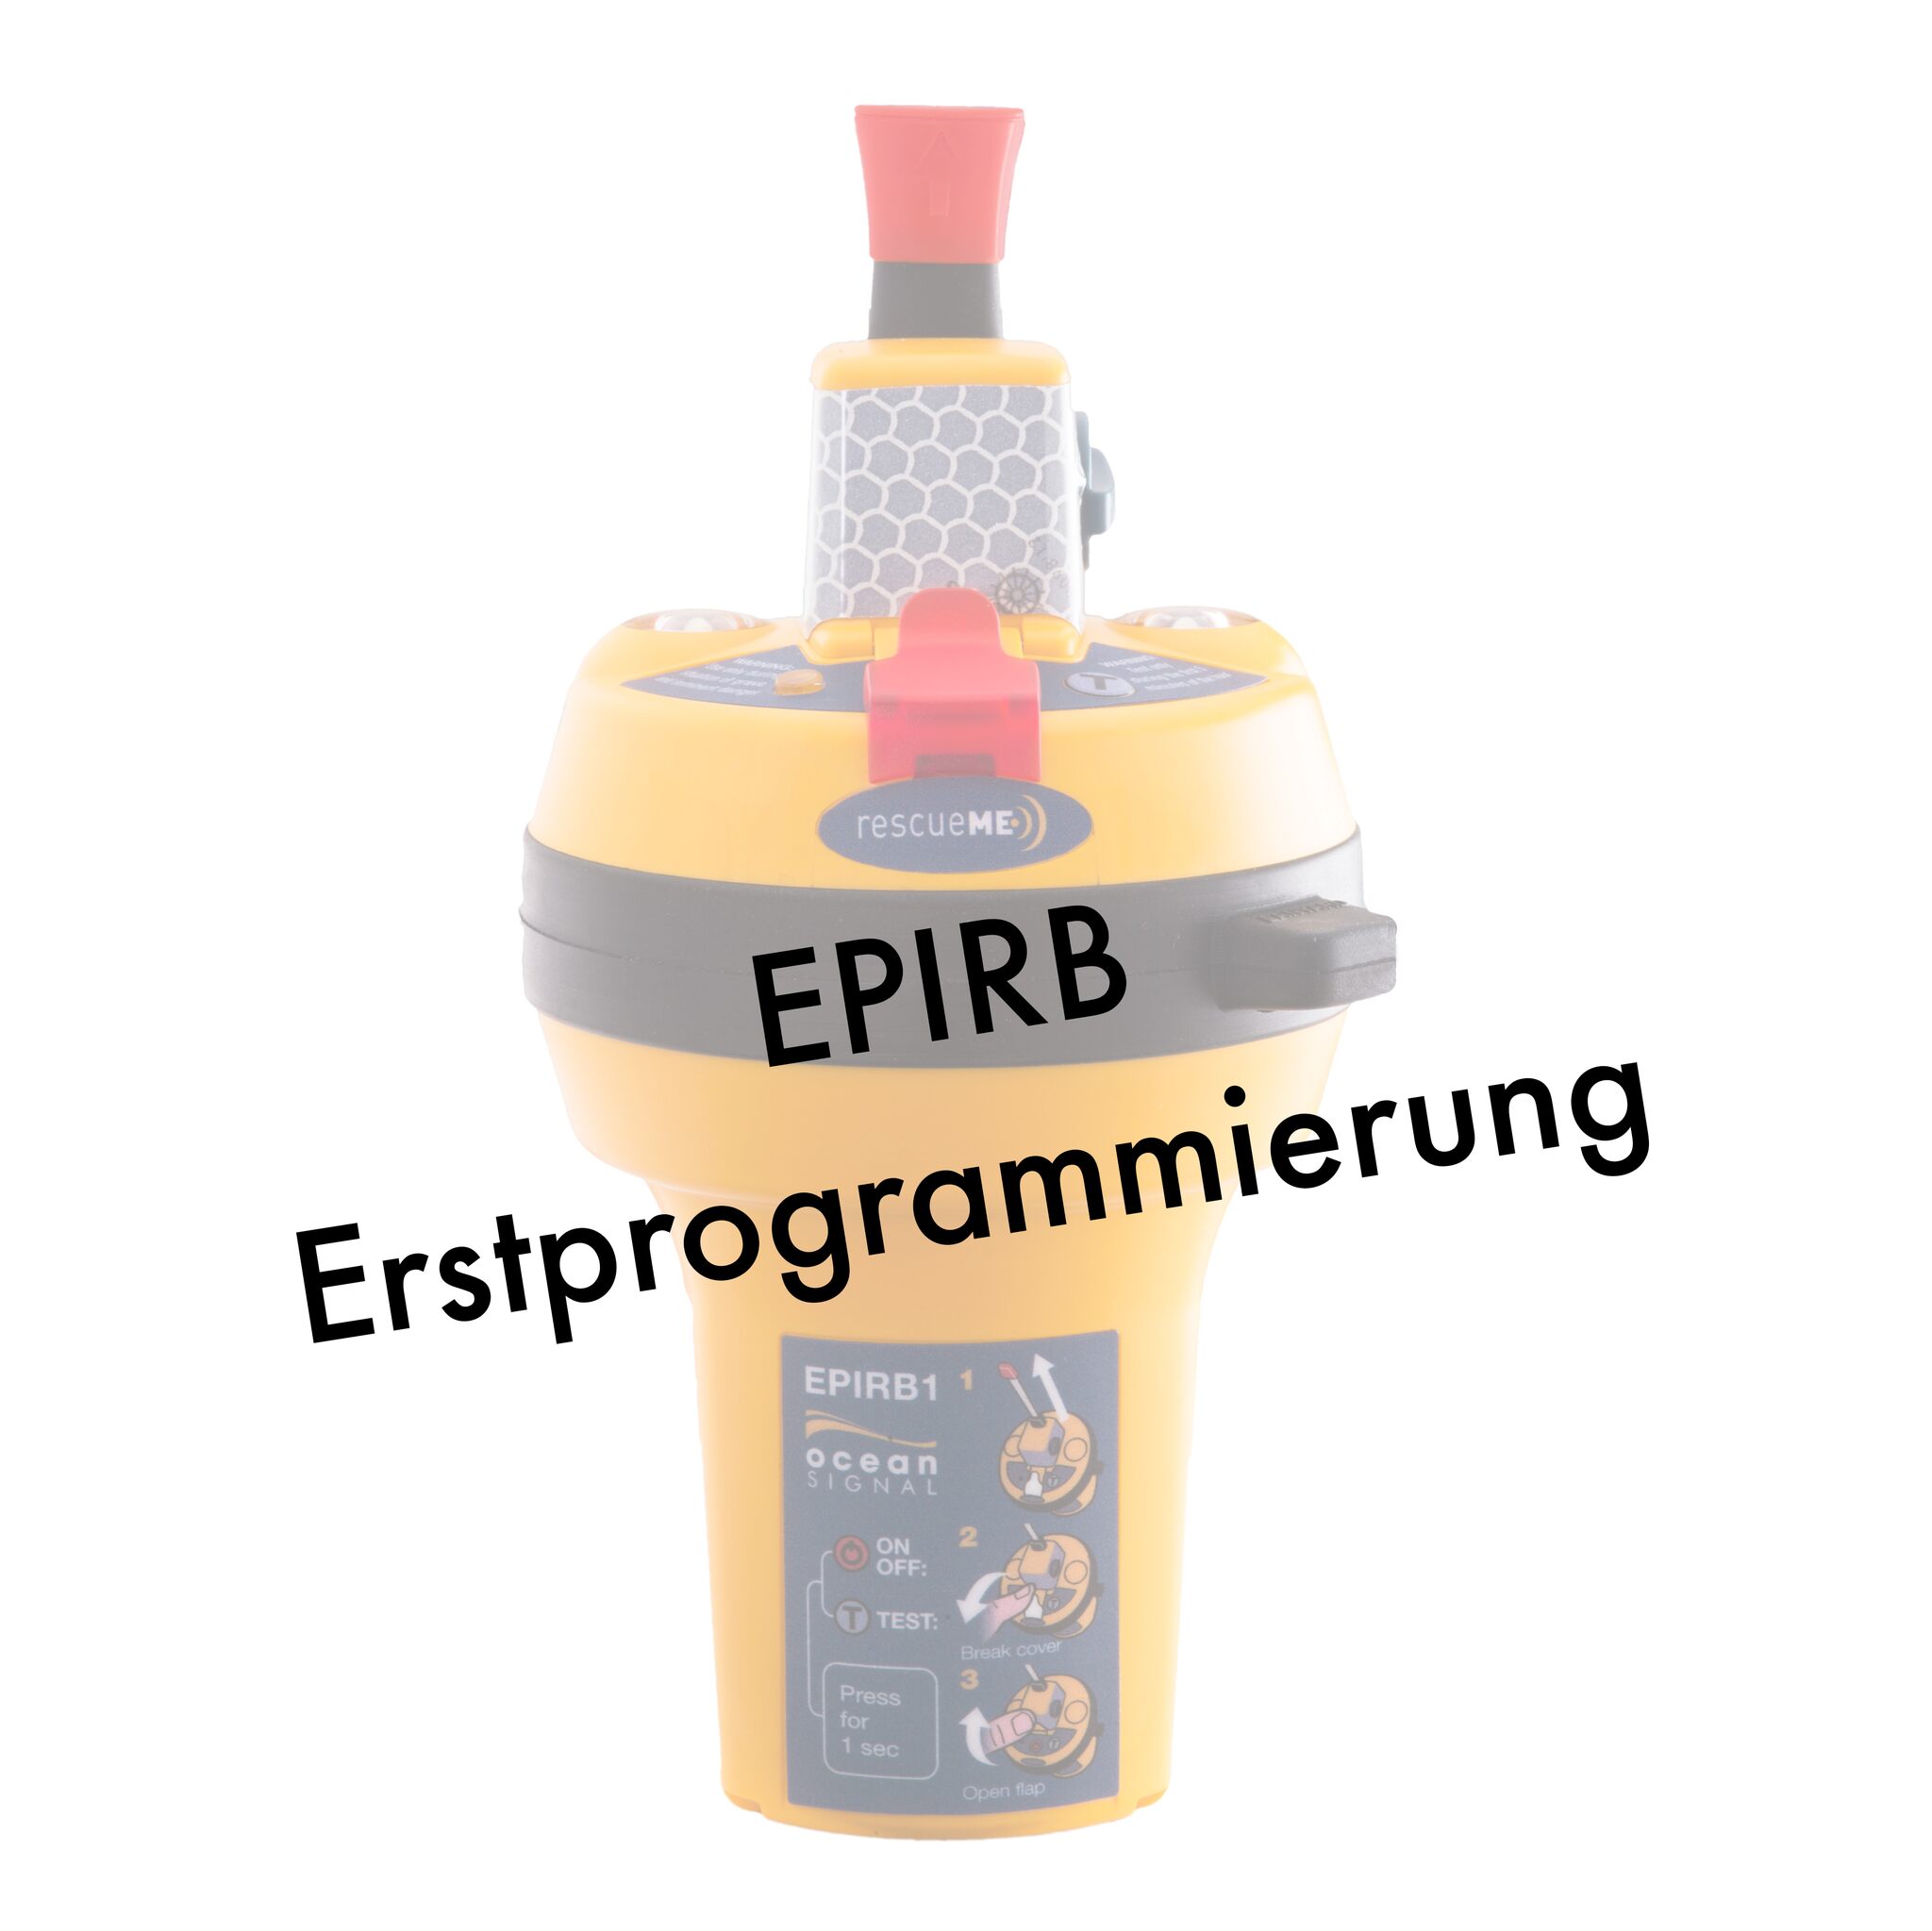 EPIRB-Erstprogrammierung